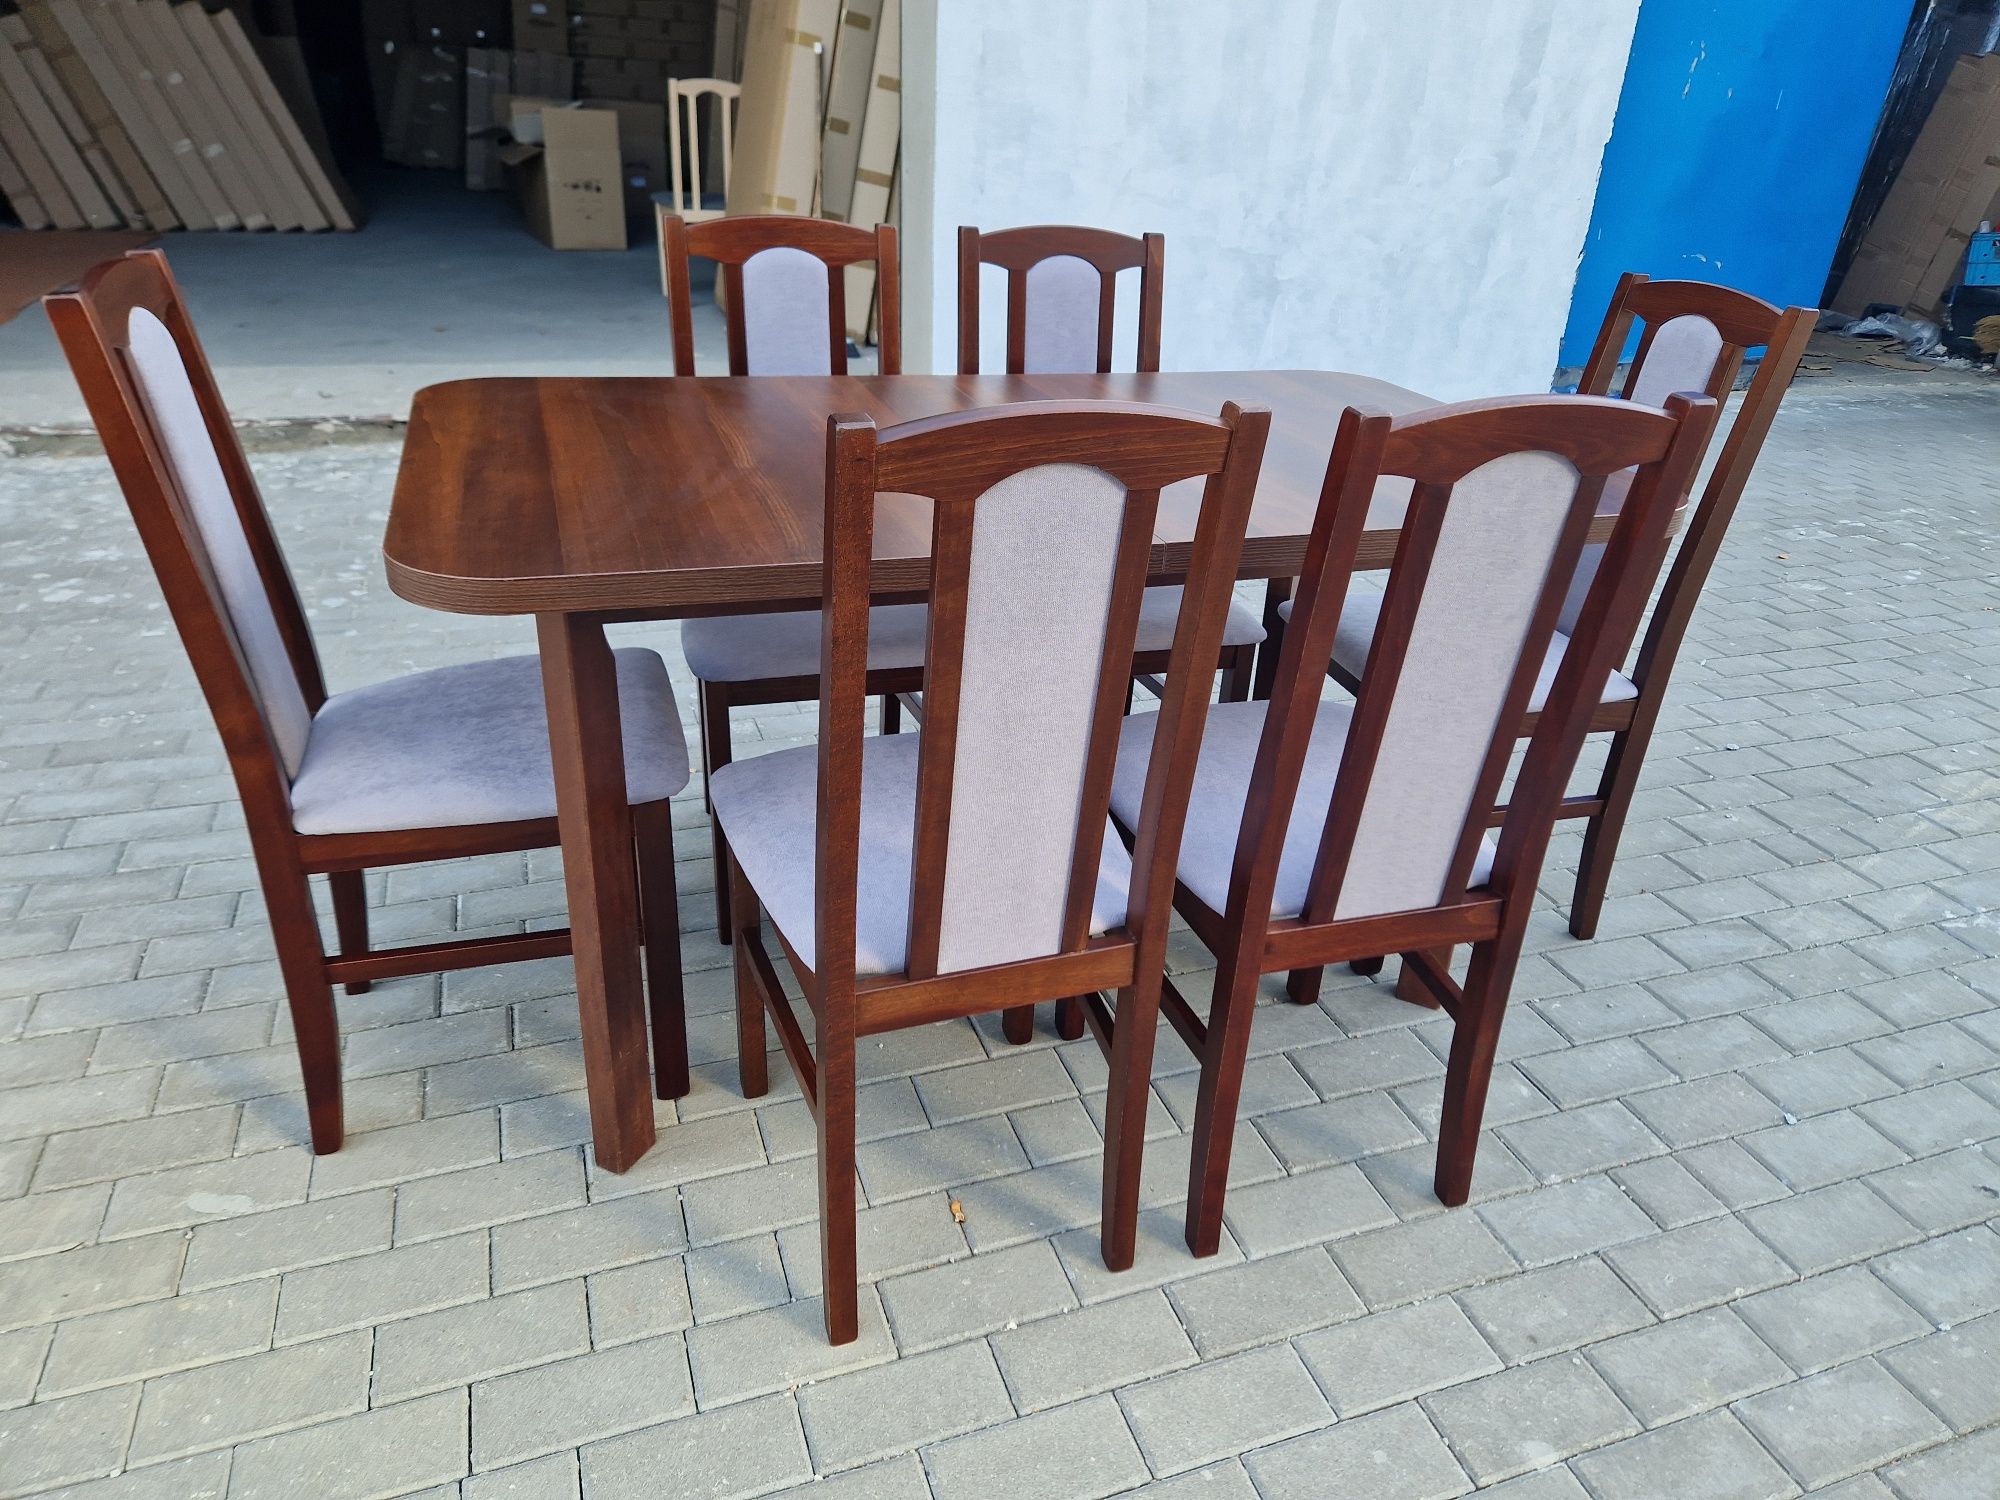 Nowe: Stół 80x140/180 + 6 krzeseł, orzech + szary, dostawa cała PL